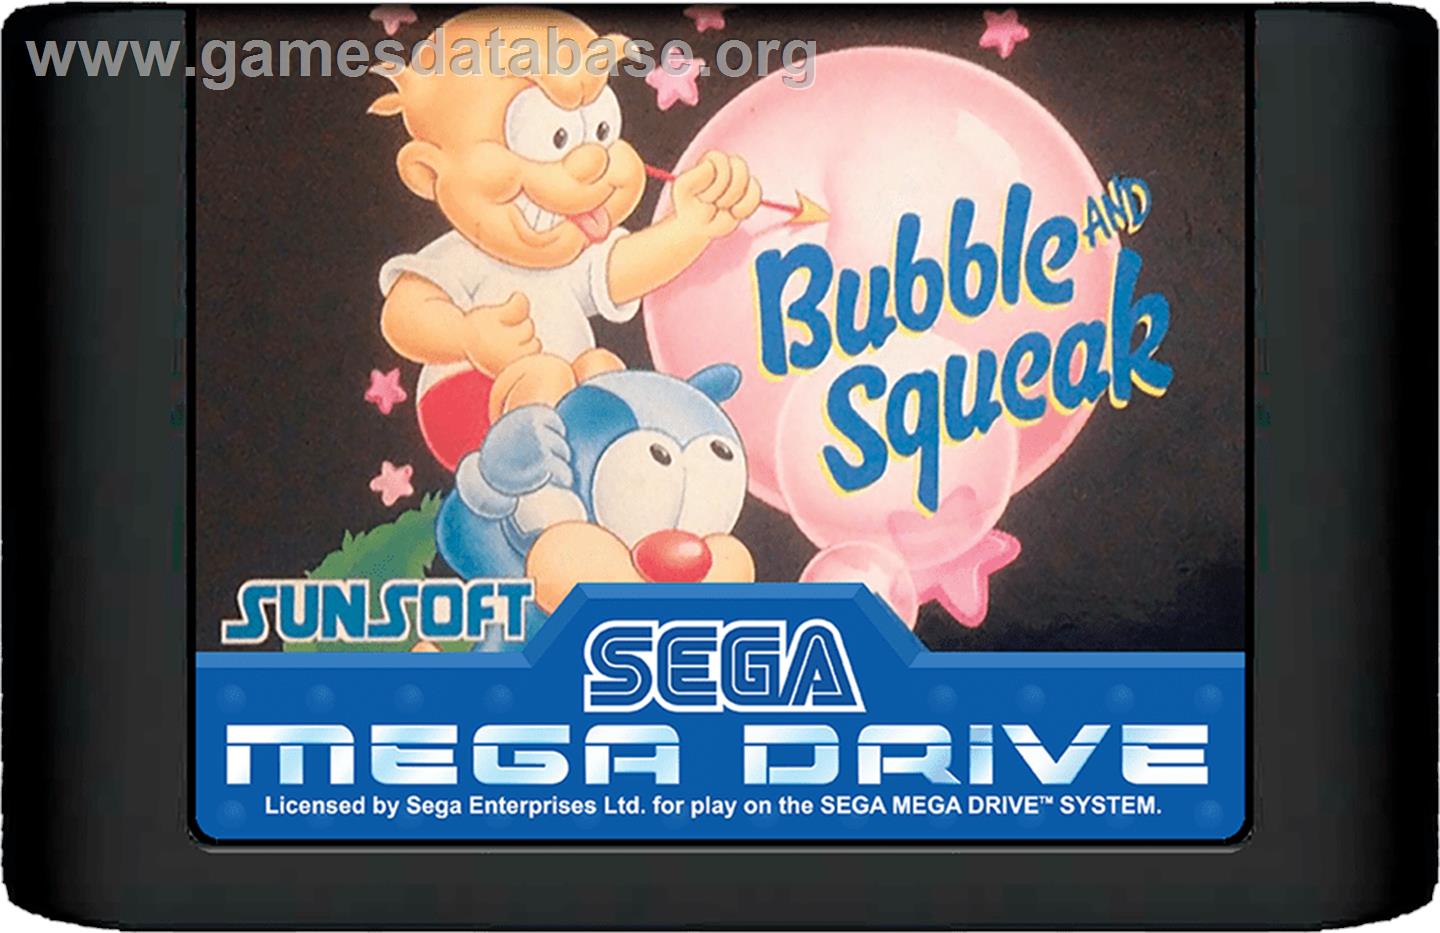 Bubble and Squeak - Sega Genesis - Artwork - Cartridge